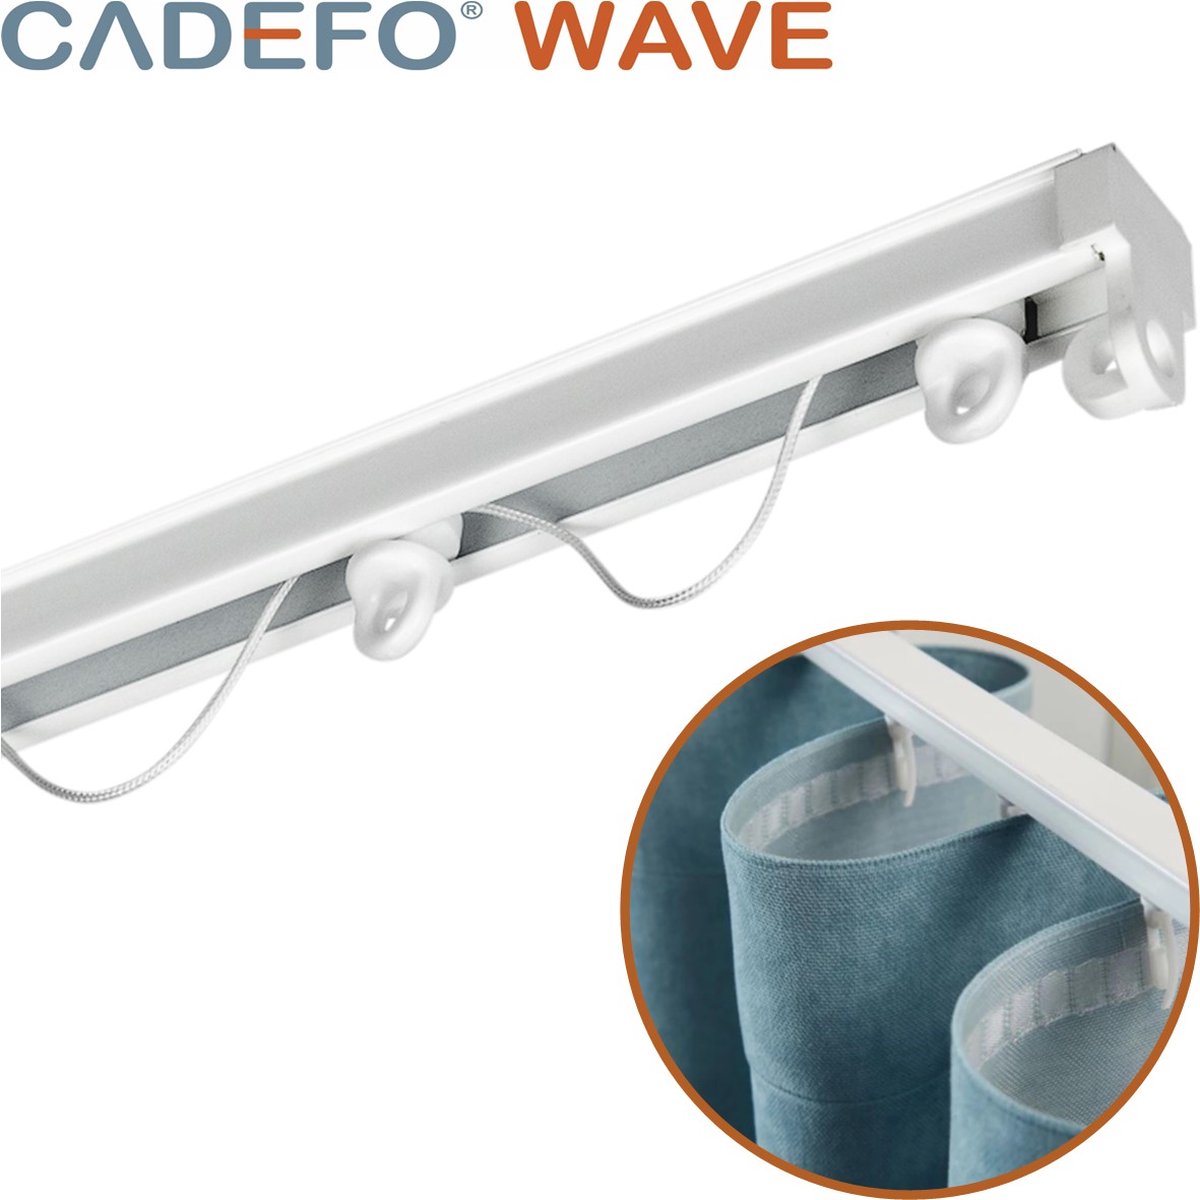 CADEFO WAVE (451 - 500 cm) Gordijnrails - Compleet op maat! - UIT 1 STUK - Leverbaar tot 6 meter - Plafondbevestiging - Lengte 478 cm